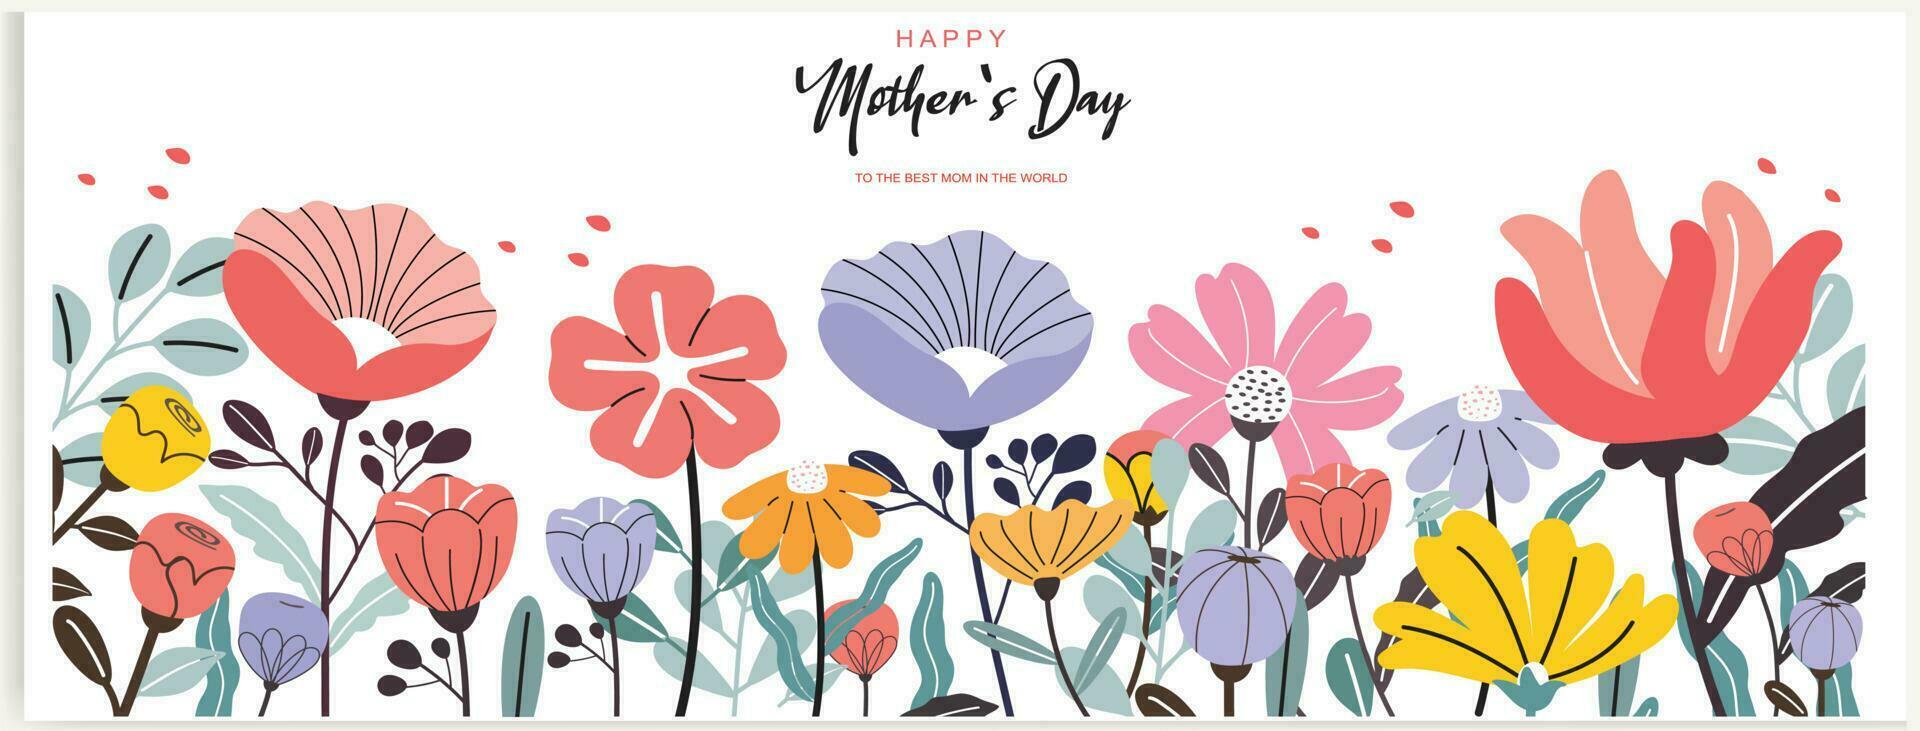 mors dag baner, affisch, hälsning kort, bakgrund design med skön blomma blommor. vektor illustration.